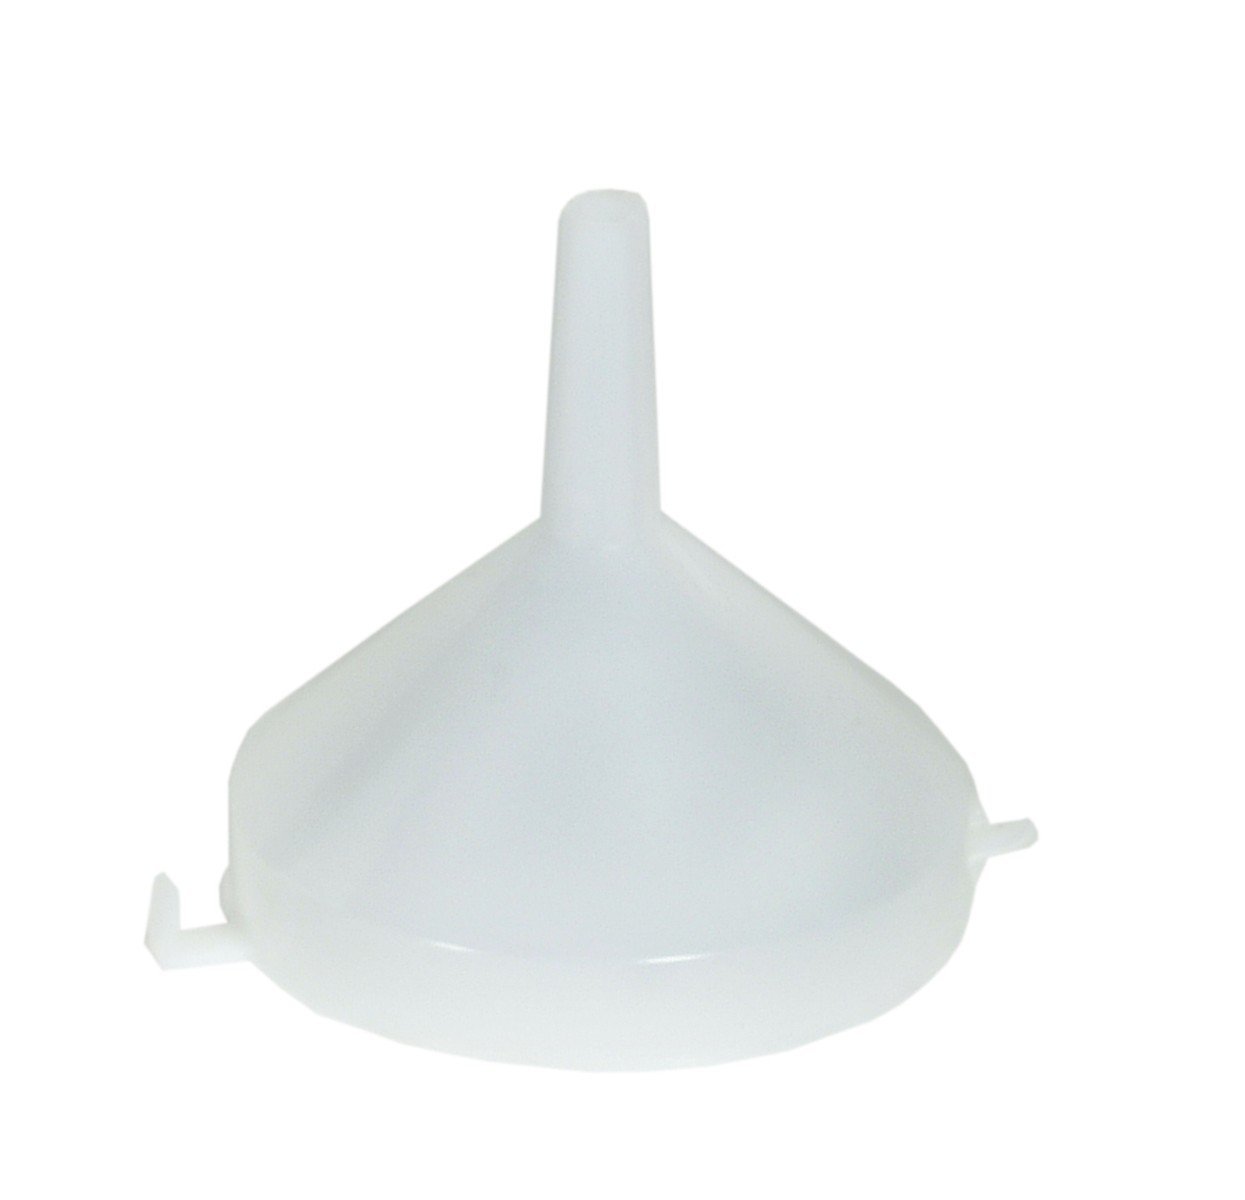 083-1834-000 - Plastic funnel diameter 120mm